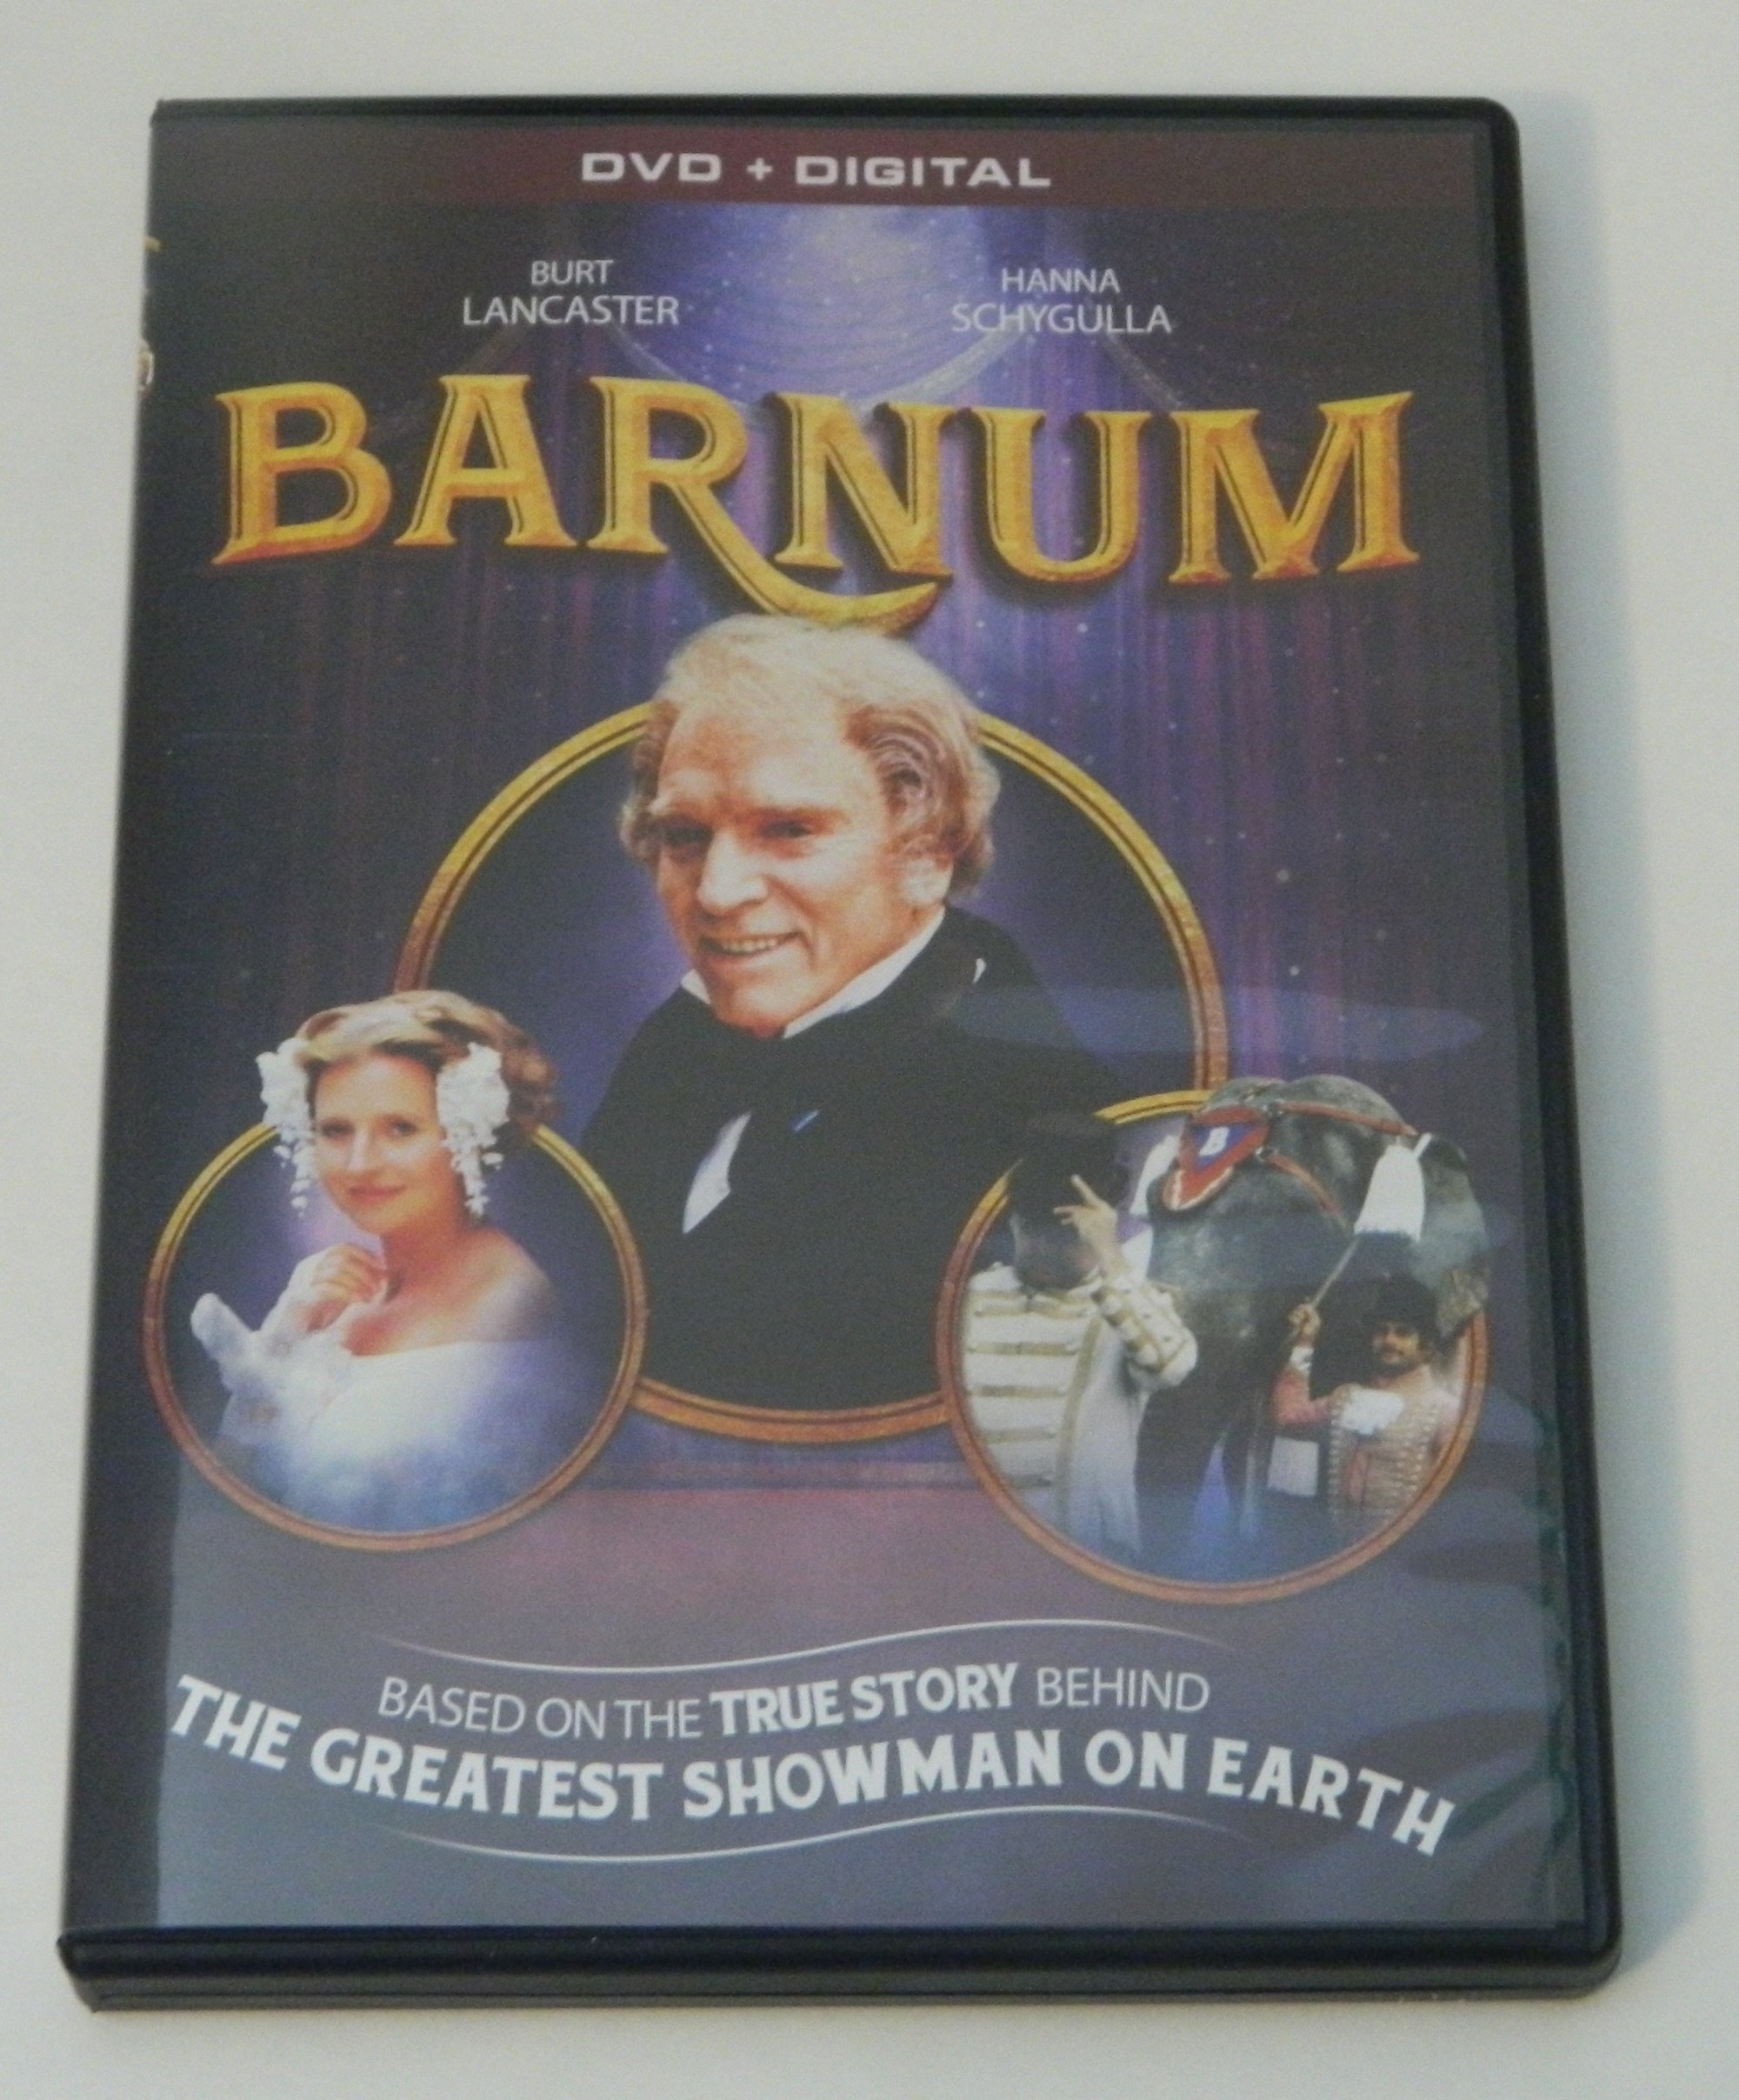 Barnum (1986) DVD Review